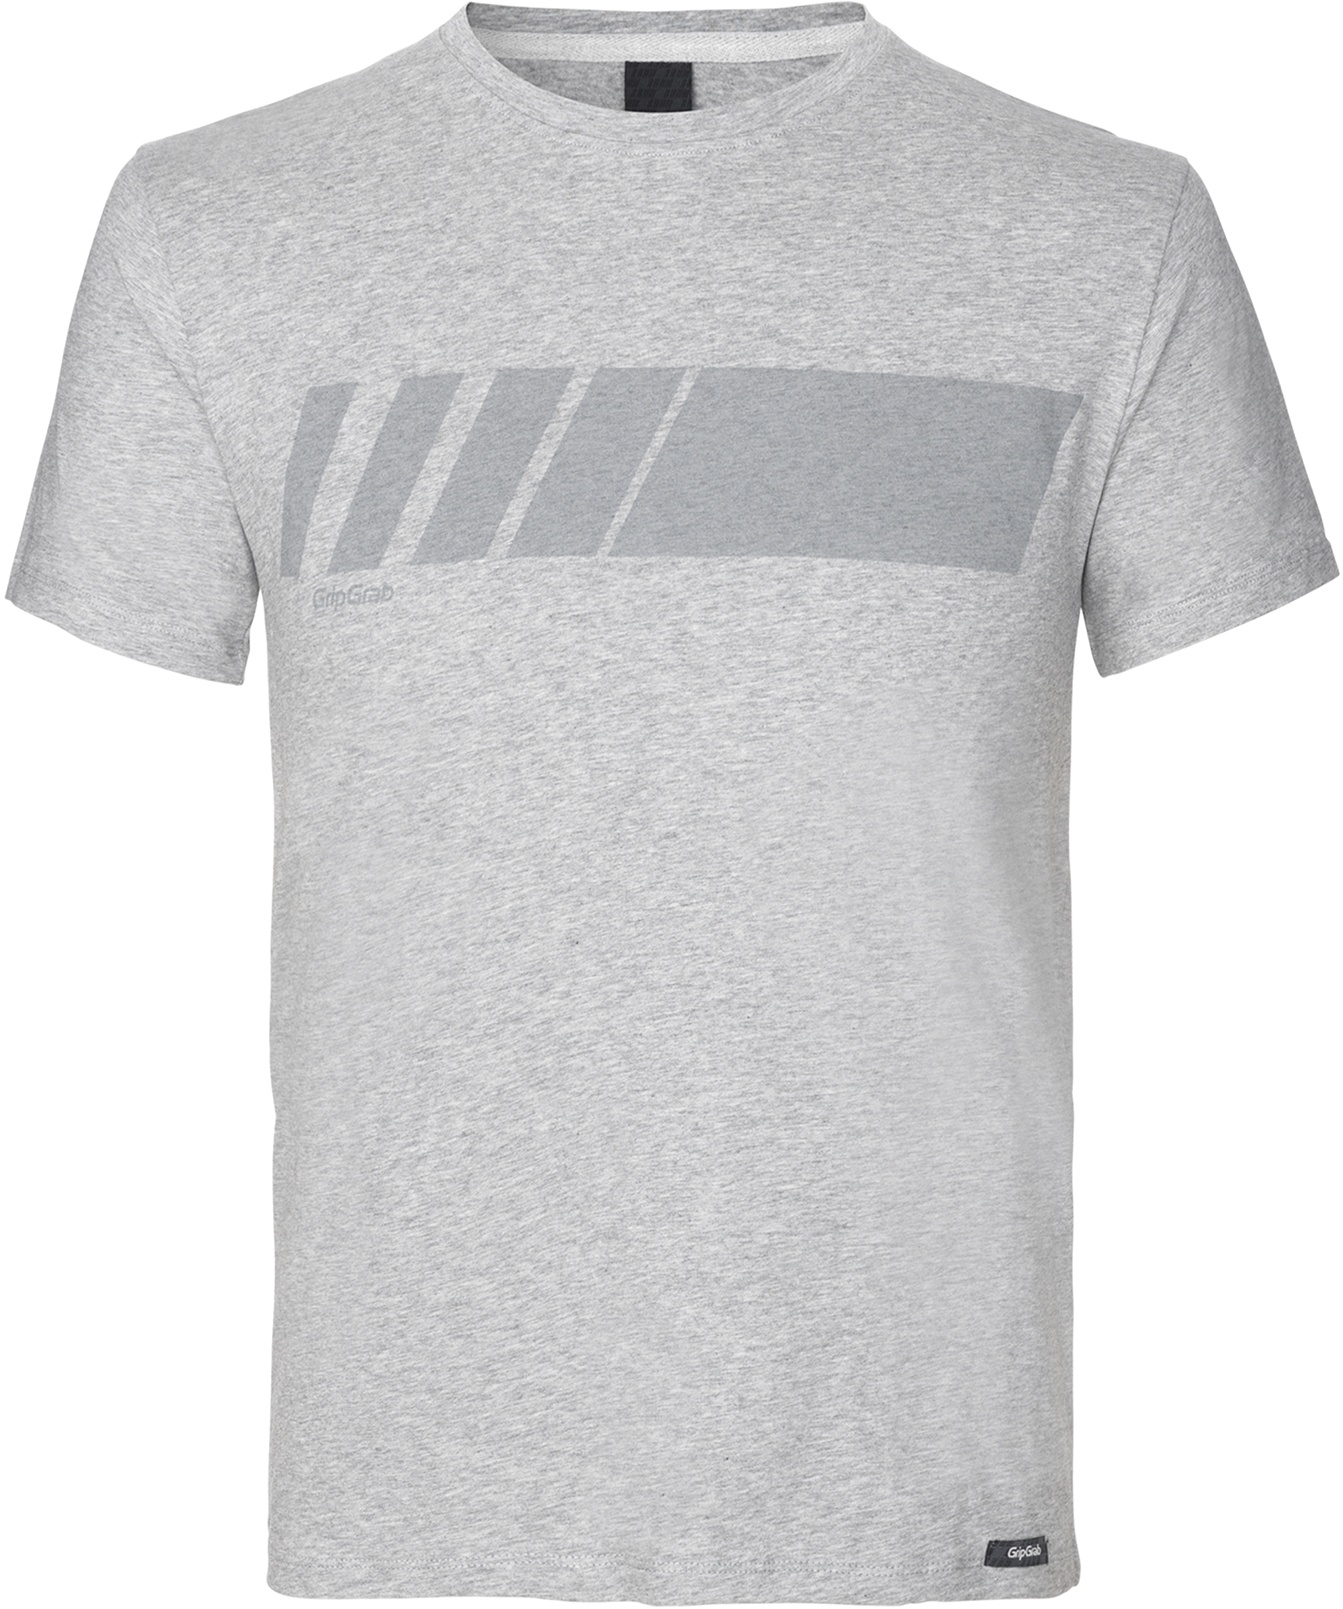 Beklædning - Merchandise - GripGrab Racing Stripe Kortærmet Økologisk Bomulds-T-shirt - Grå